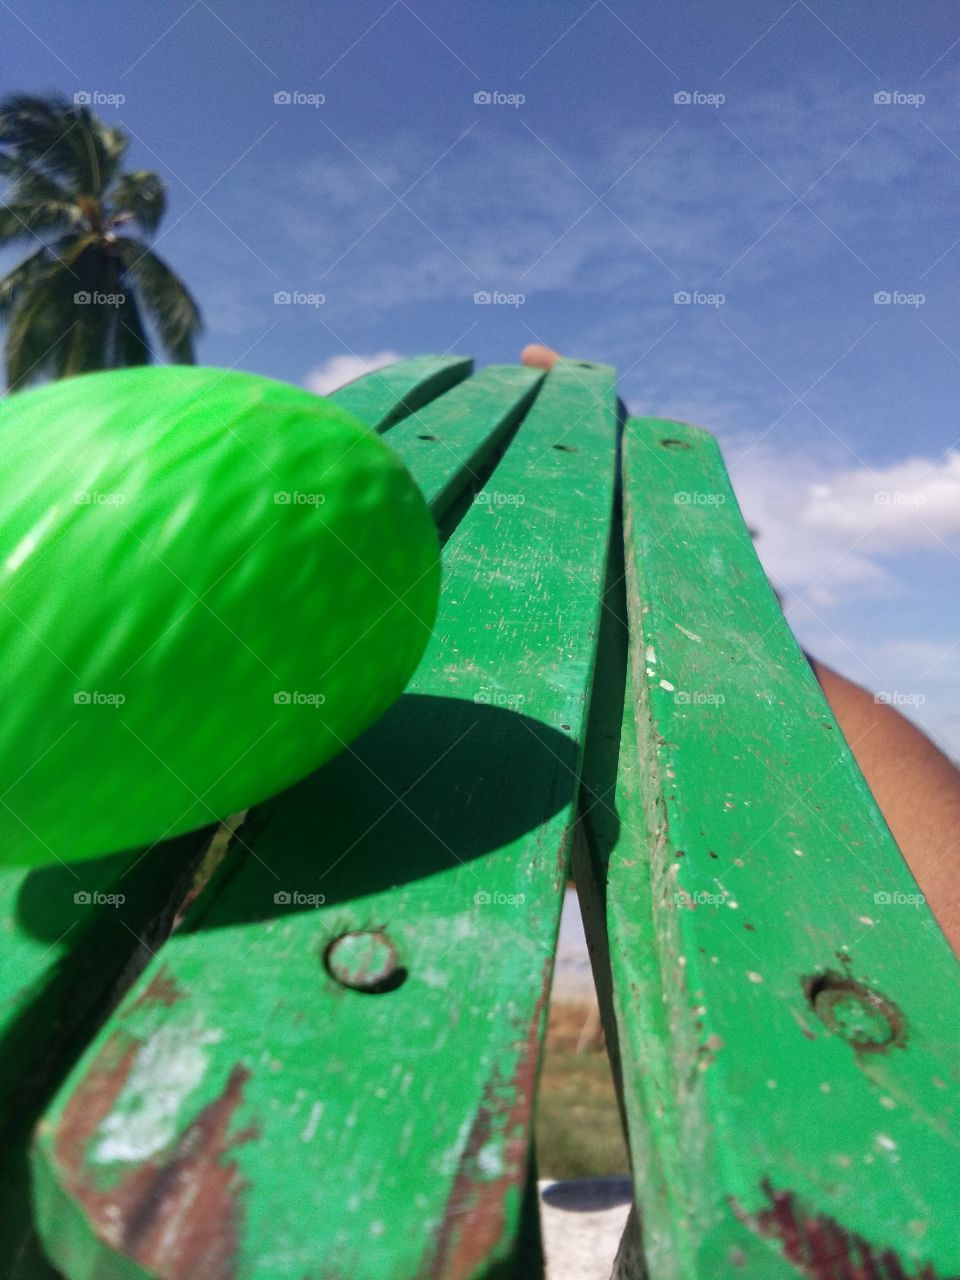 green ball